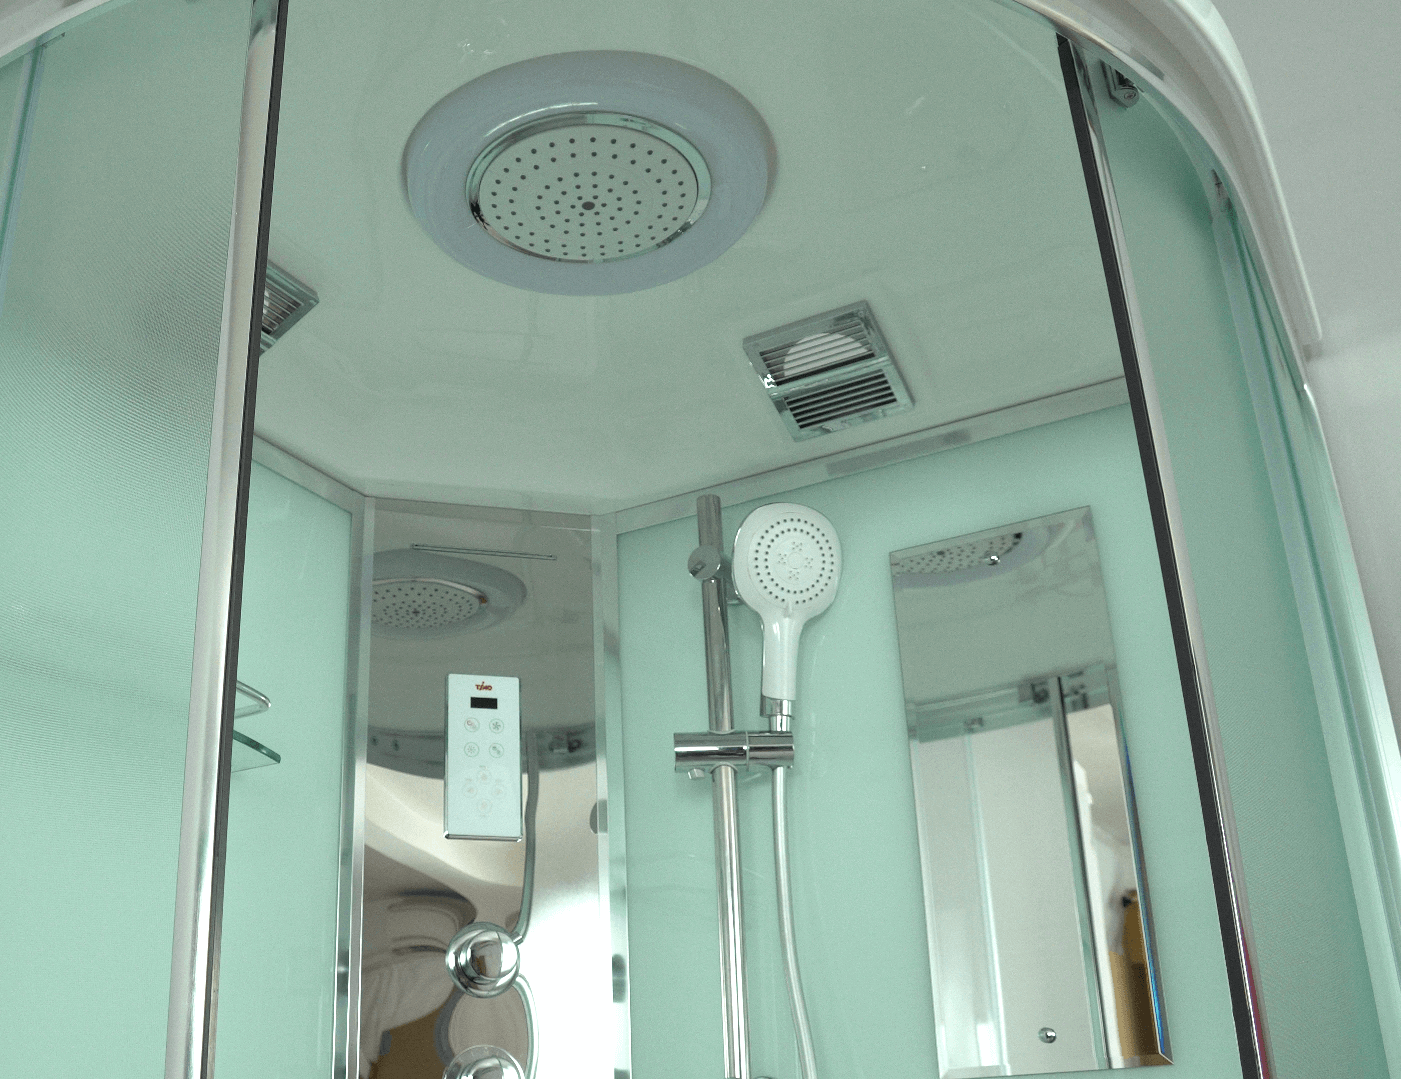 Душевая кабина Timo Comfort T-8800 Fabric Glass 100х100 — купить со скидкой в Москве. Интернет-магазин сантехники Пять-измерений.ру